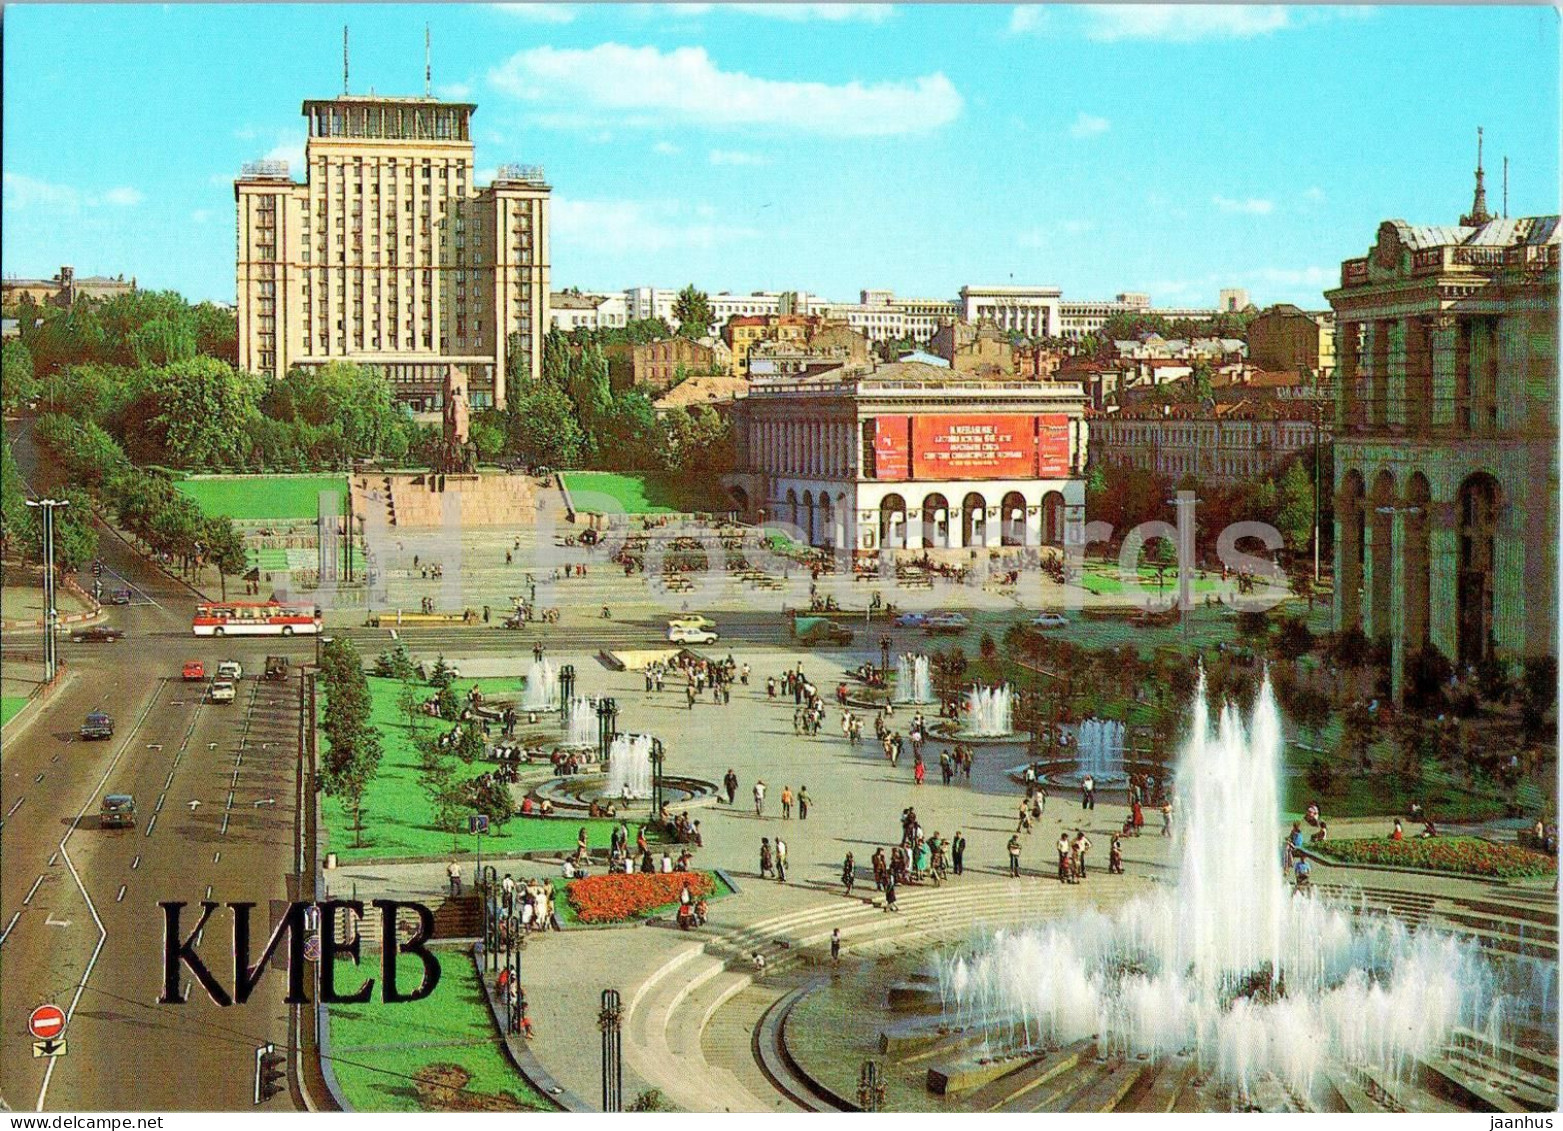 Kyiv - October Revolution Square - Bus Ikarus - 1983 - Ukraine USSR - Unused - Ukraine